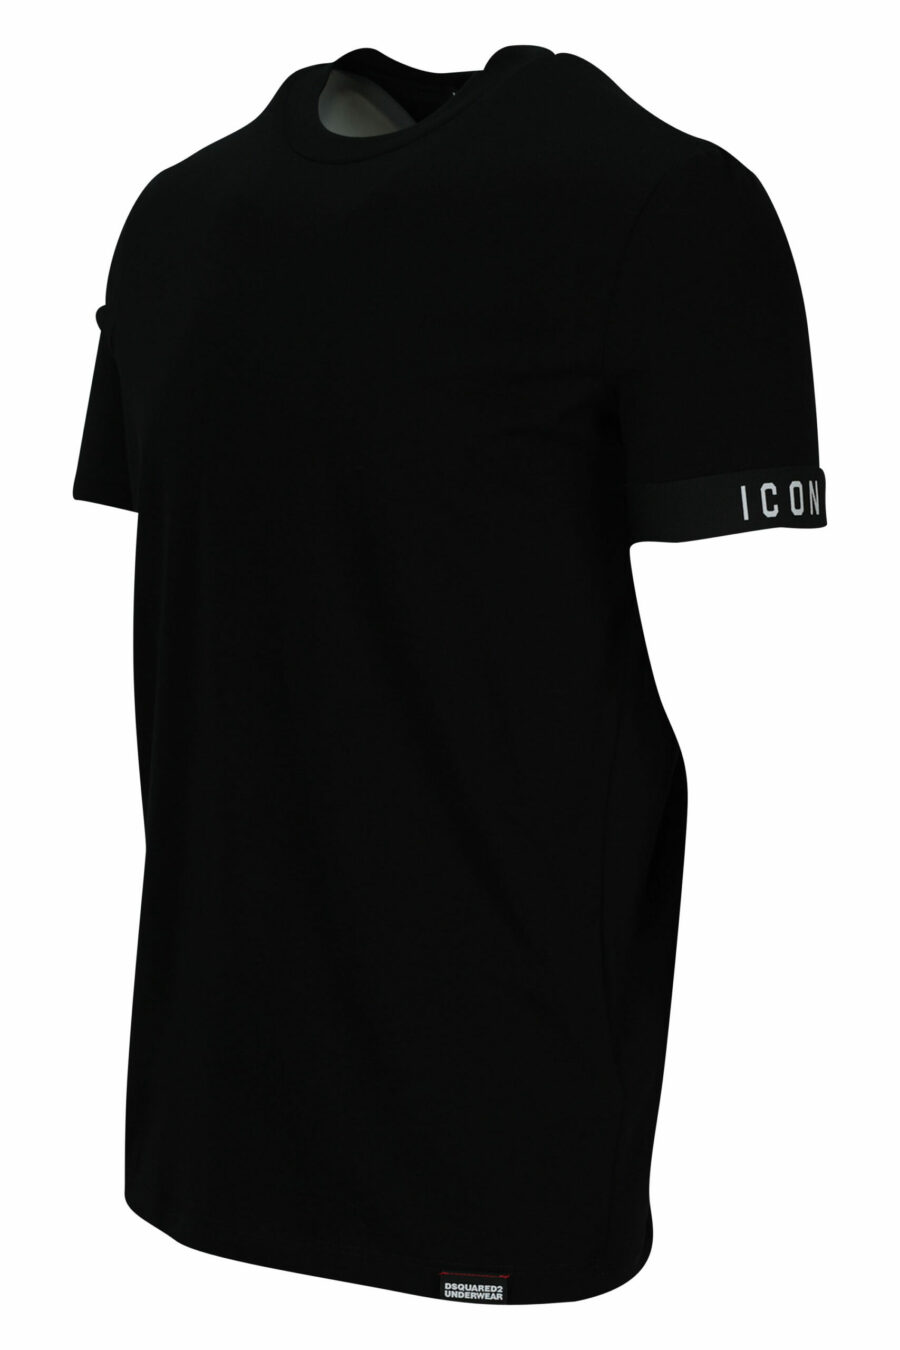 Camiseta negra con logo pequeño - 8032674767431 1 scaled